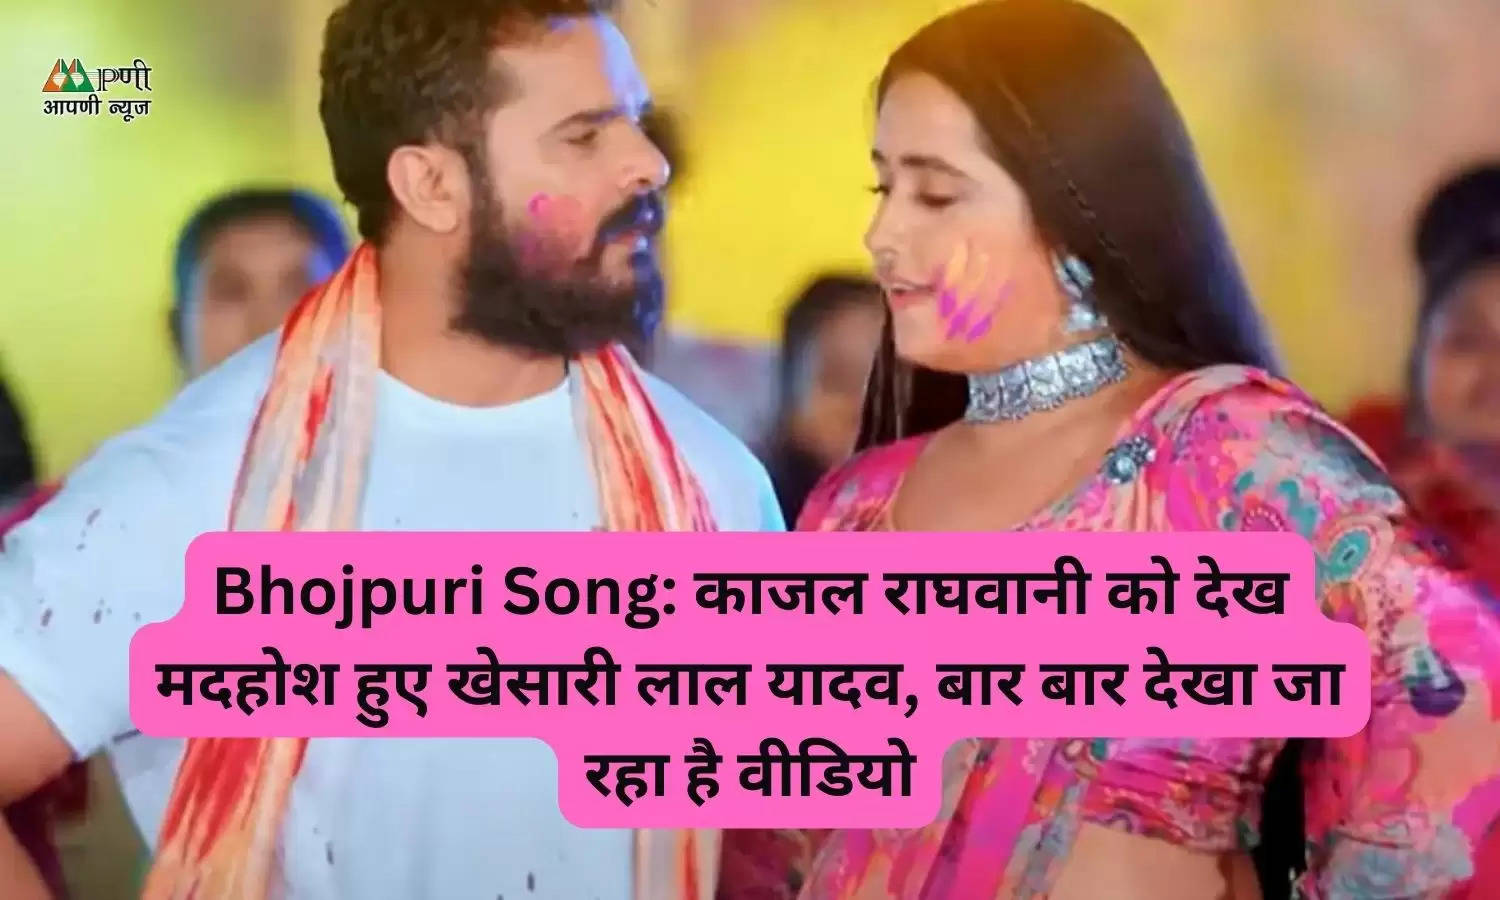 Bhojpuri Song: काजल राघवानी को देख मदहोश हुए खेसारी लाल यादव, बार बार देखा जा रहा है वीडियो